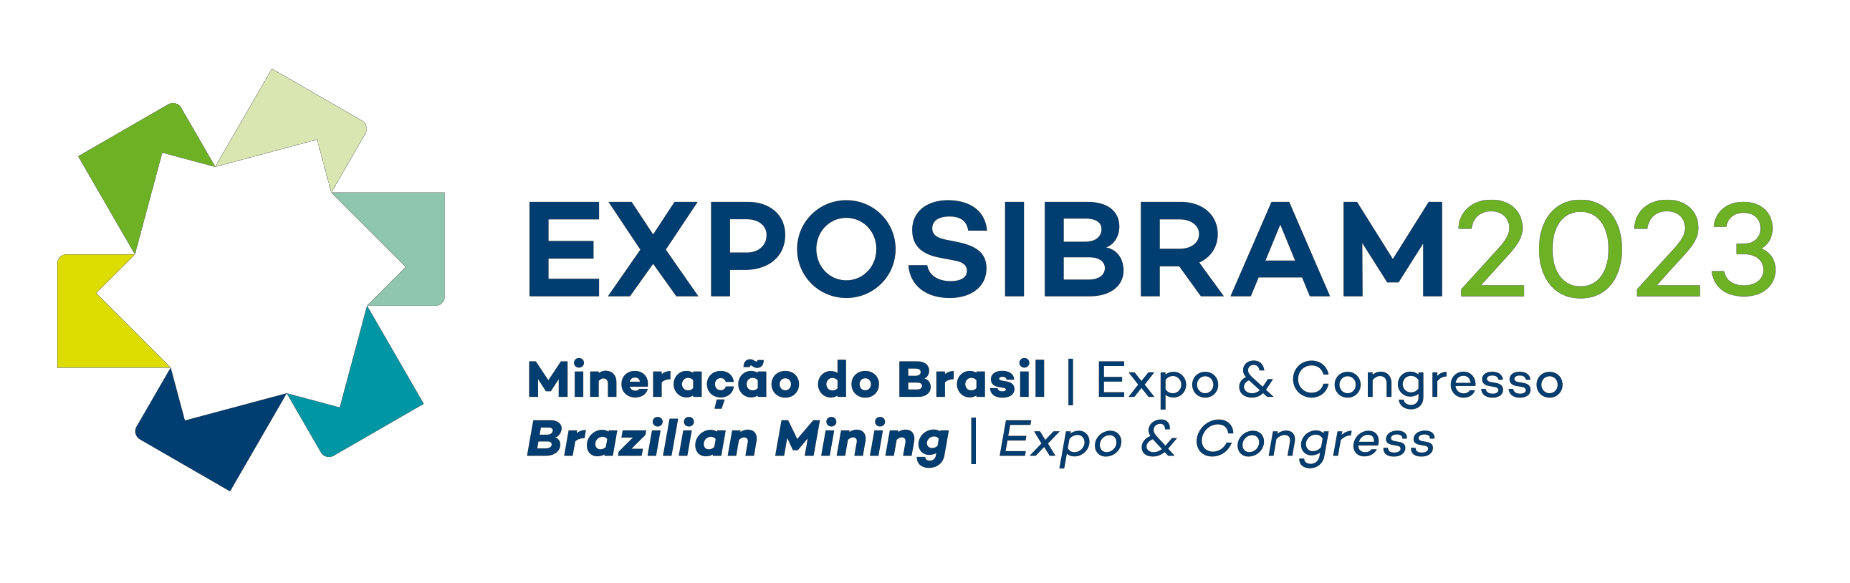 2023年巴西矿业世博会及矿业大会 EXPOSIBRAM 2023